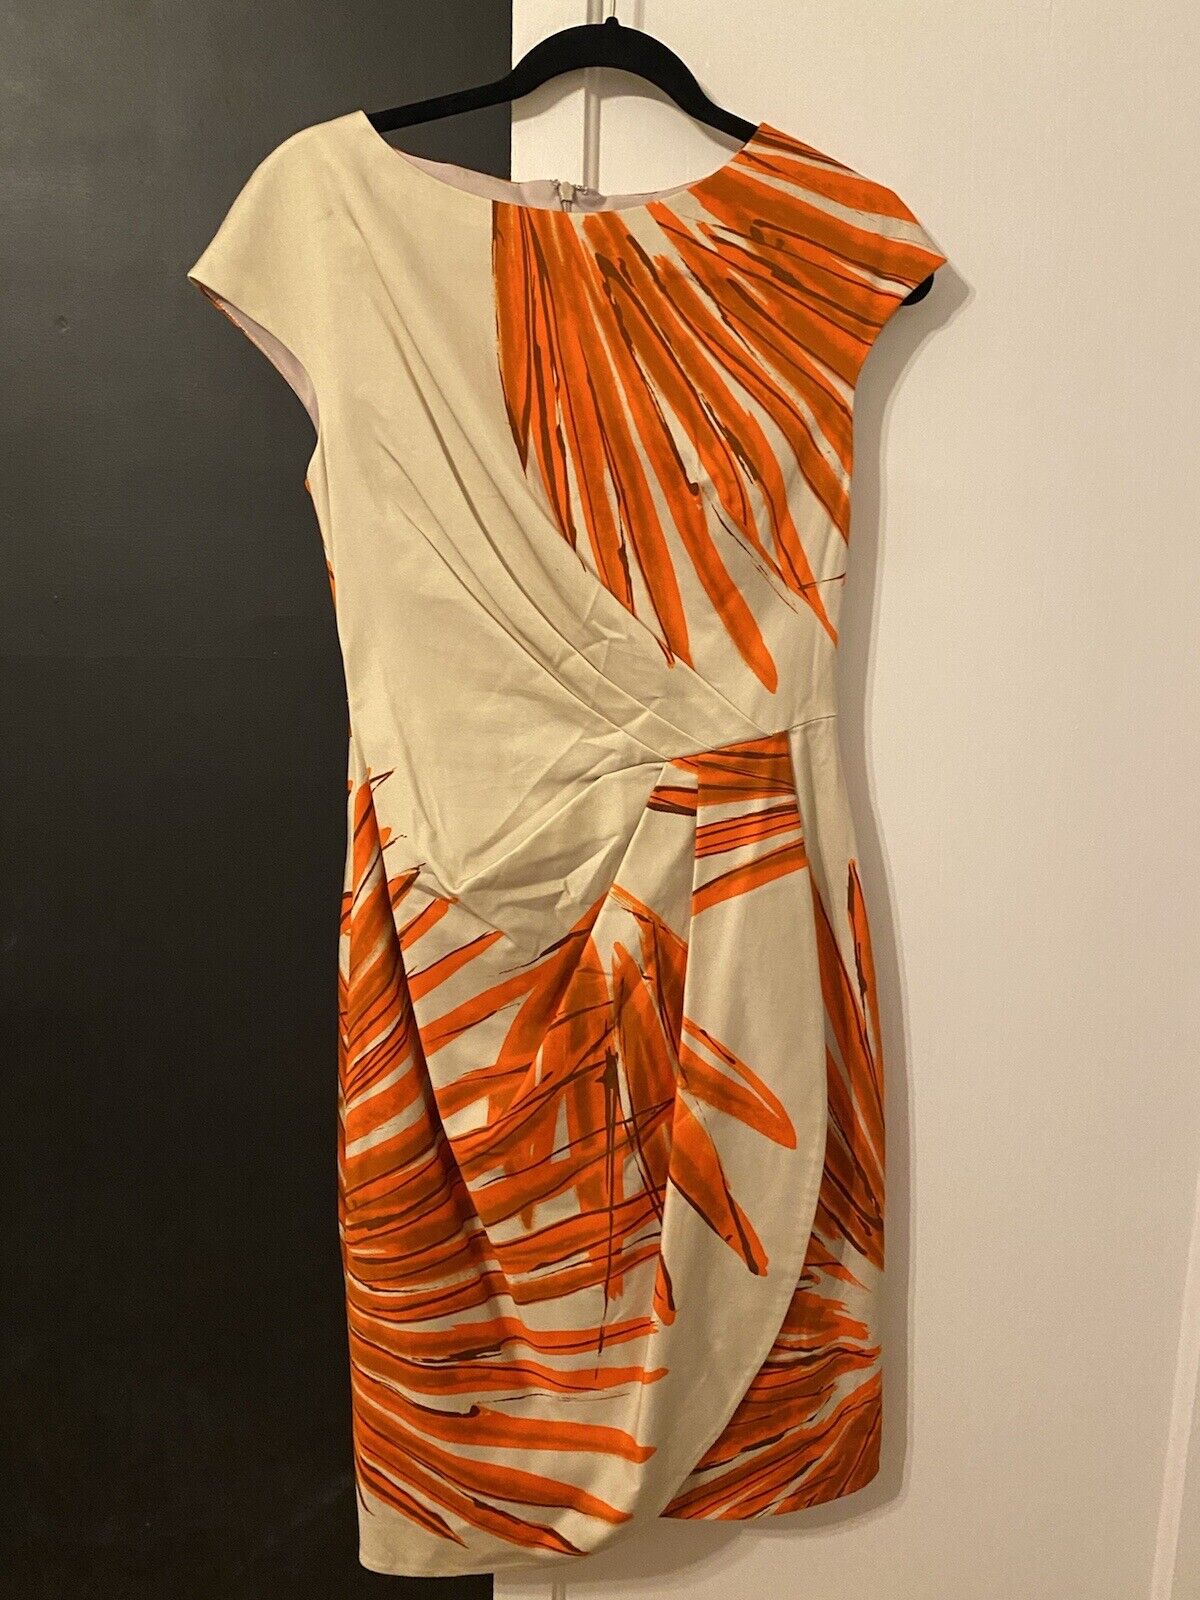 Lela Rose Dress Beige Orange Floral Cotton Size 6 - image 1